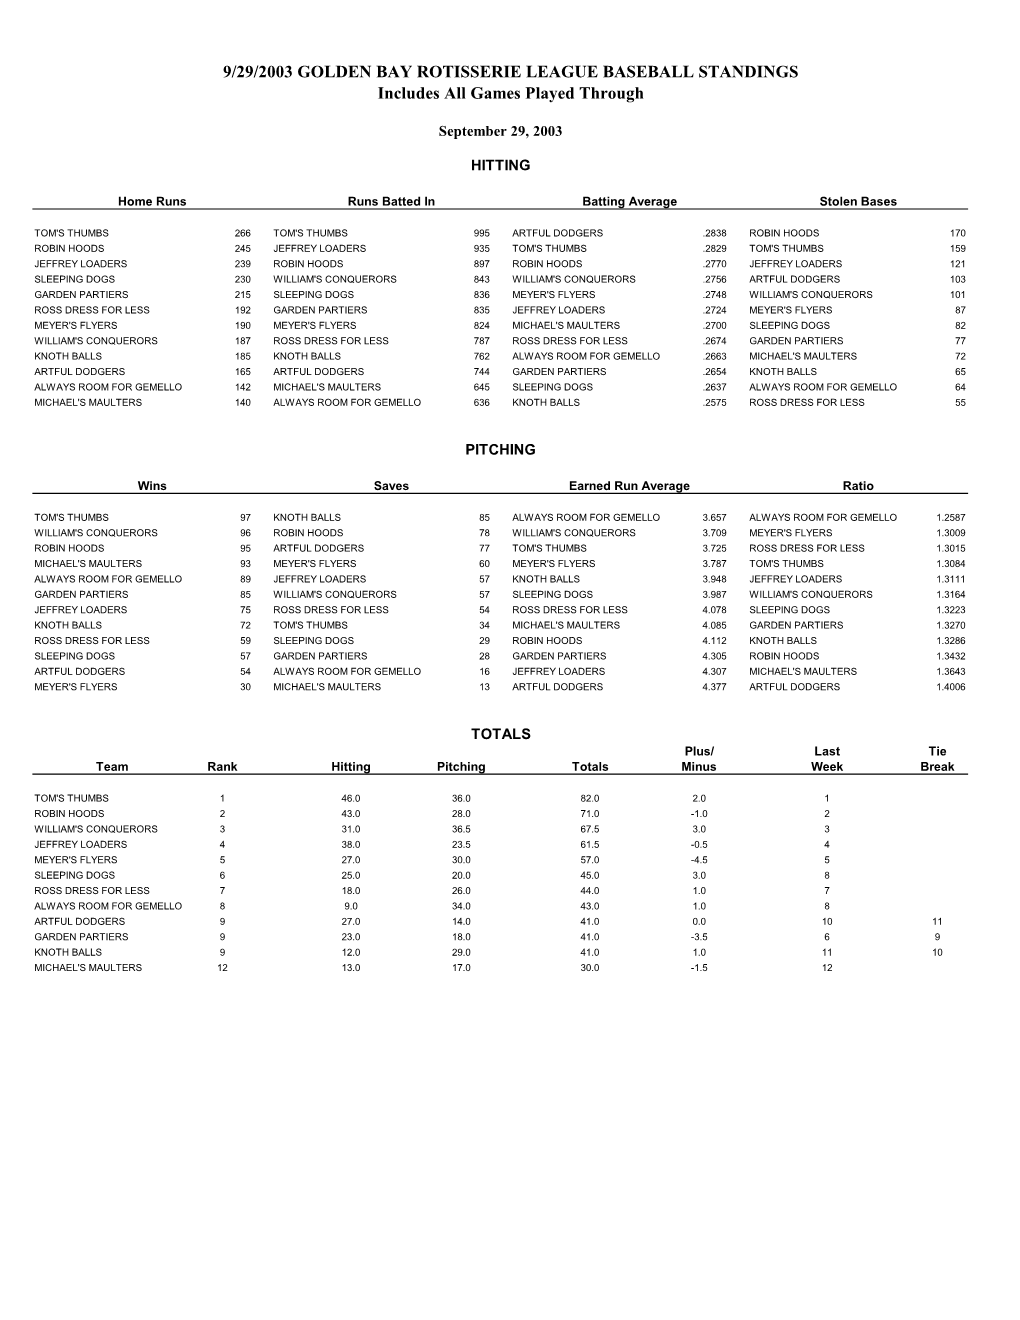 Final 2003 Golden Bay Rotisserie League Standings